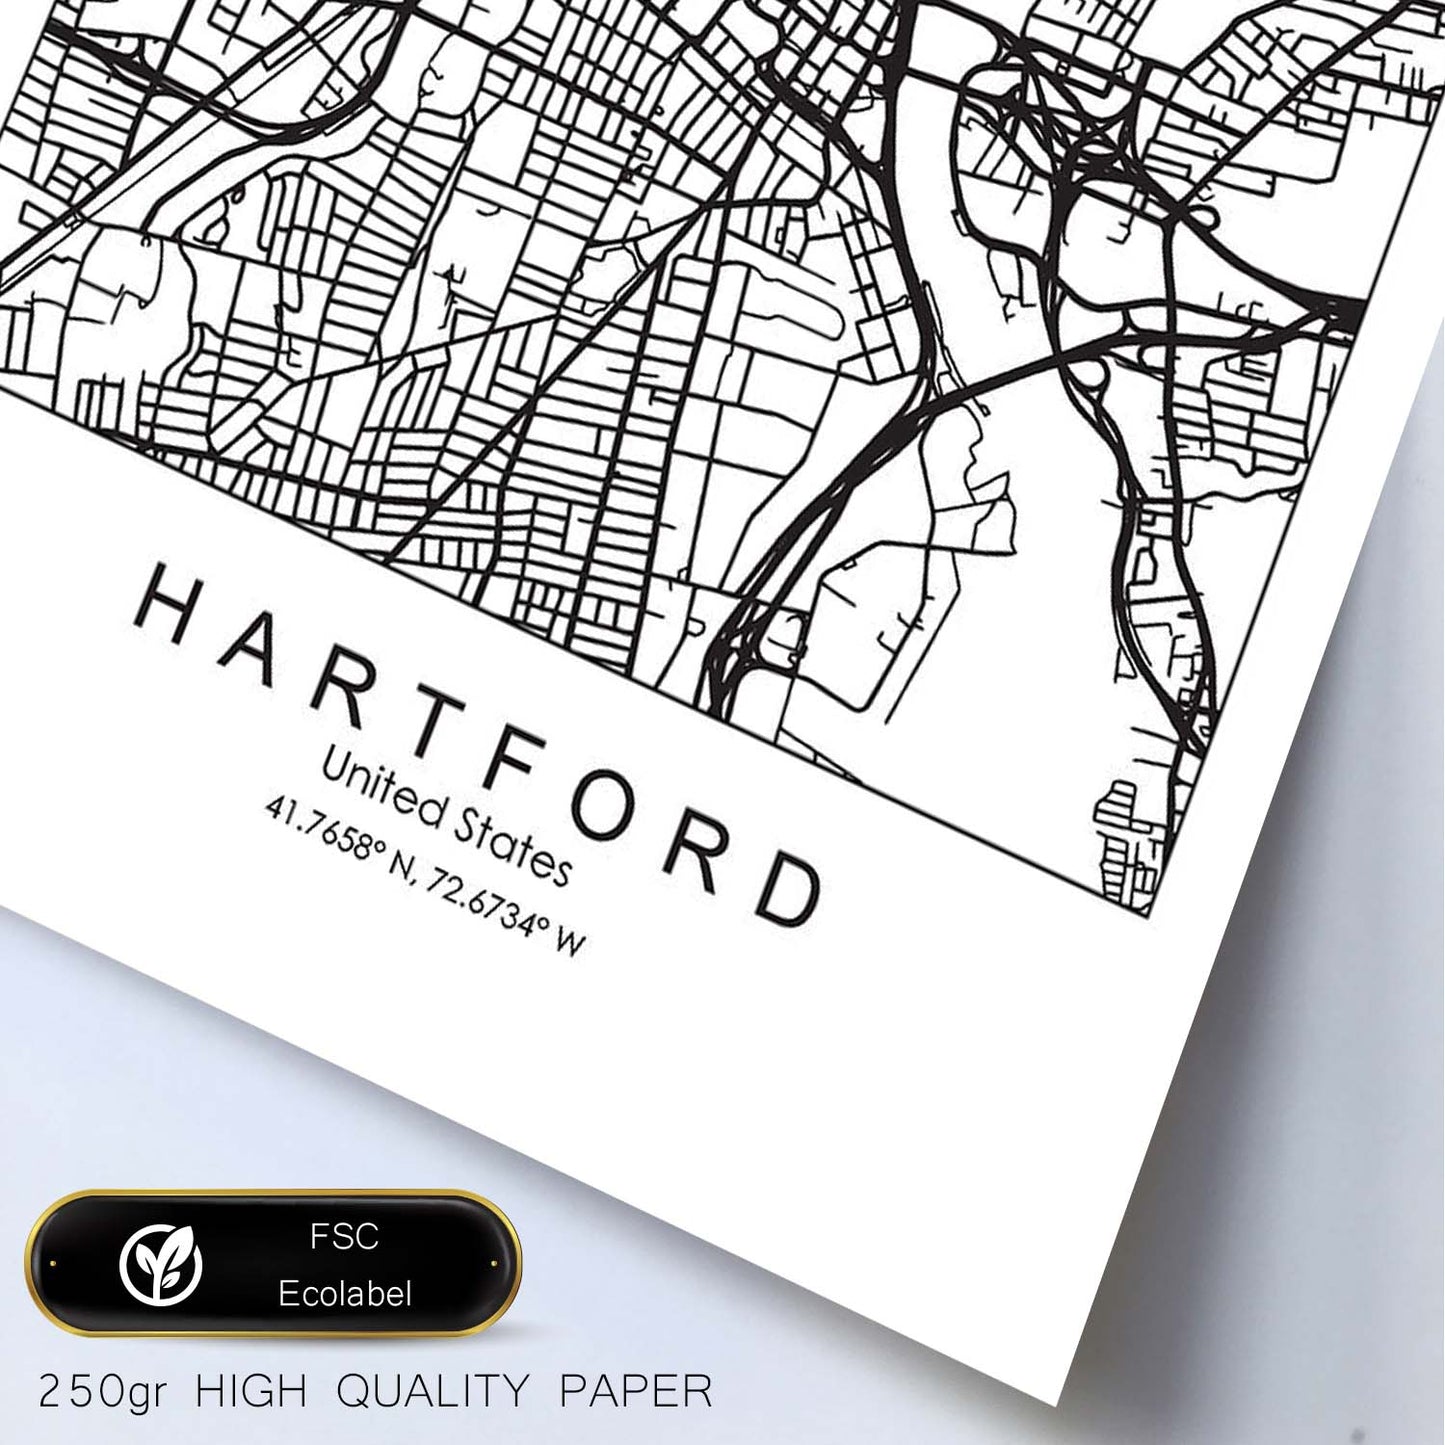 Poster con mapa de Hartford. Lámina de Estados Unidos, con imágenes de mapas y carreteras-Artwork-Nacnic-Nacnic Estudio SL